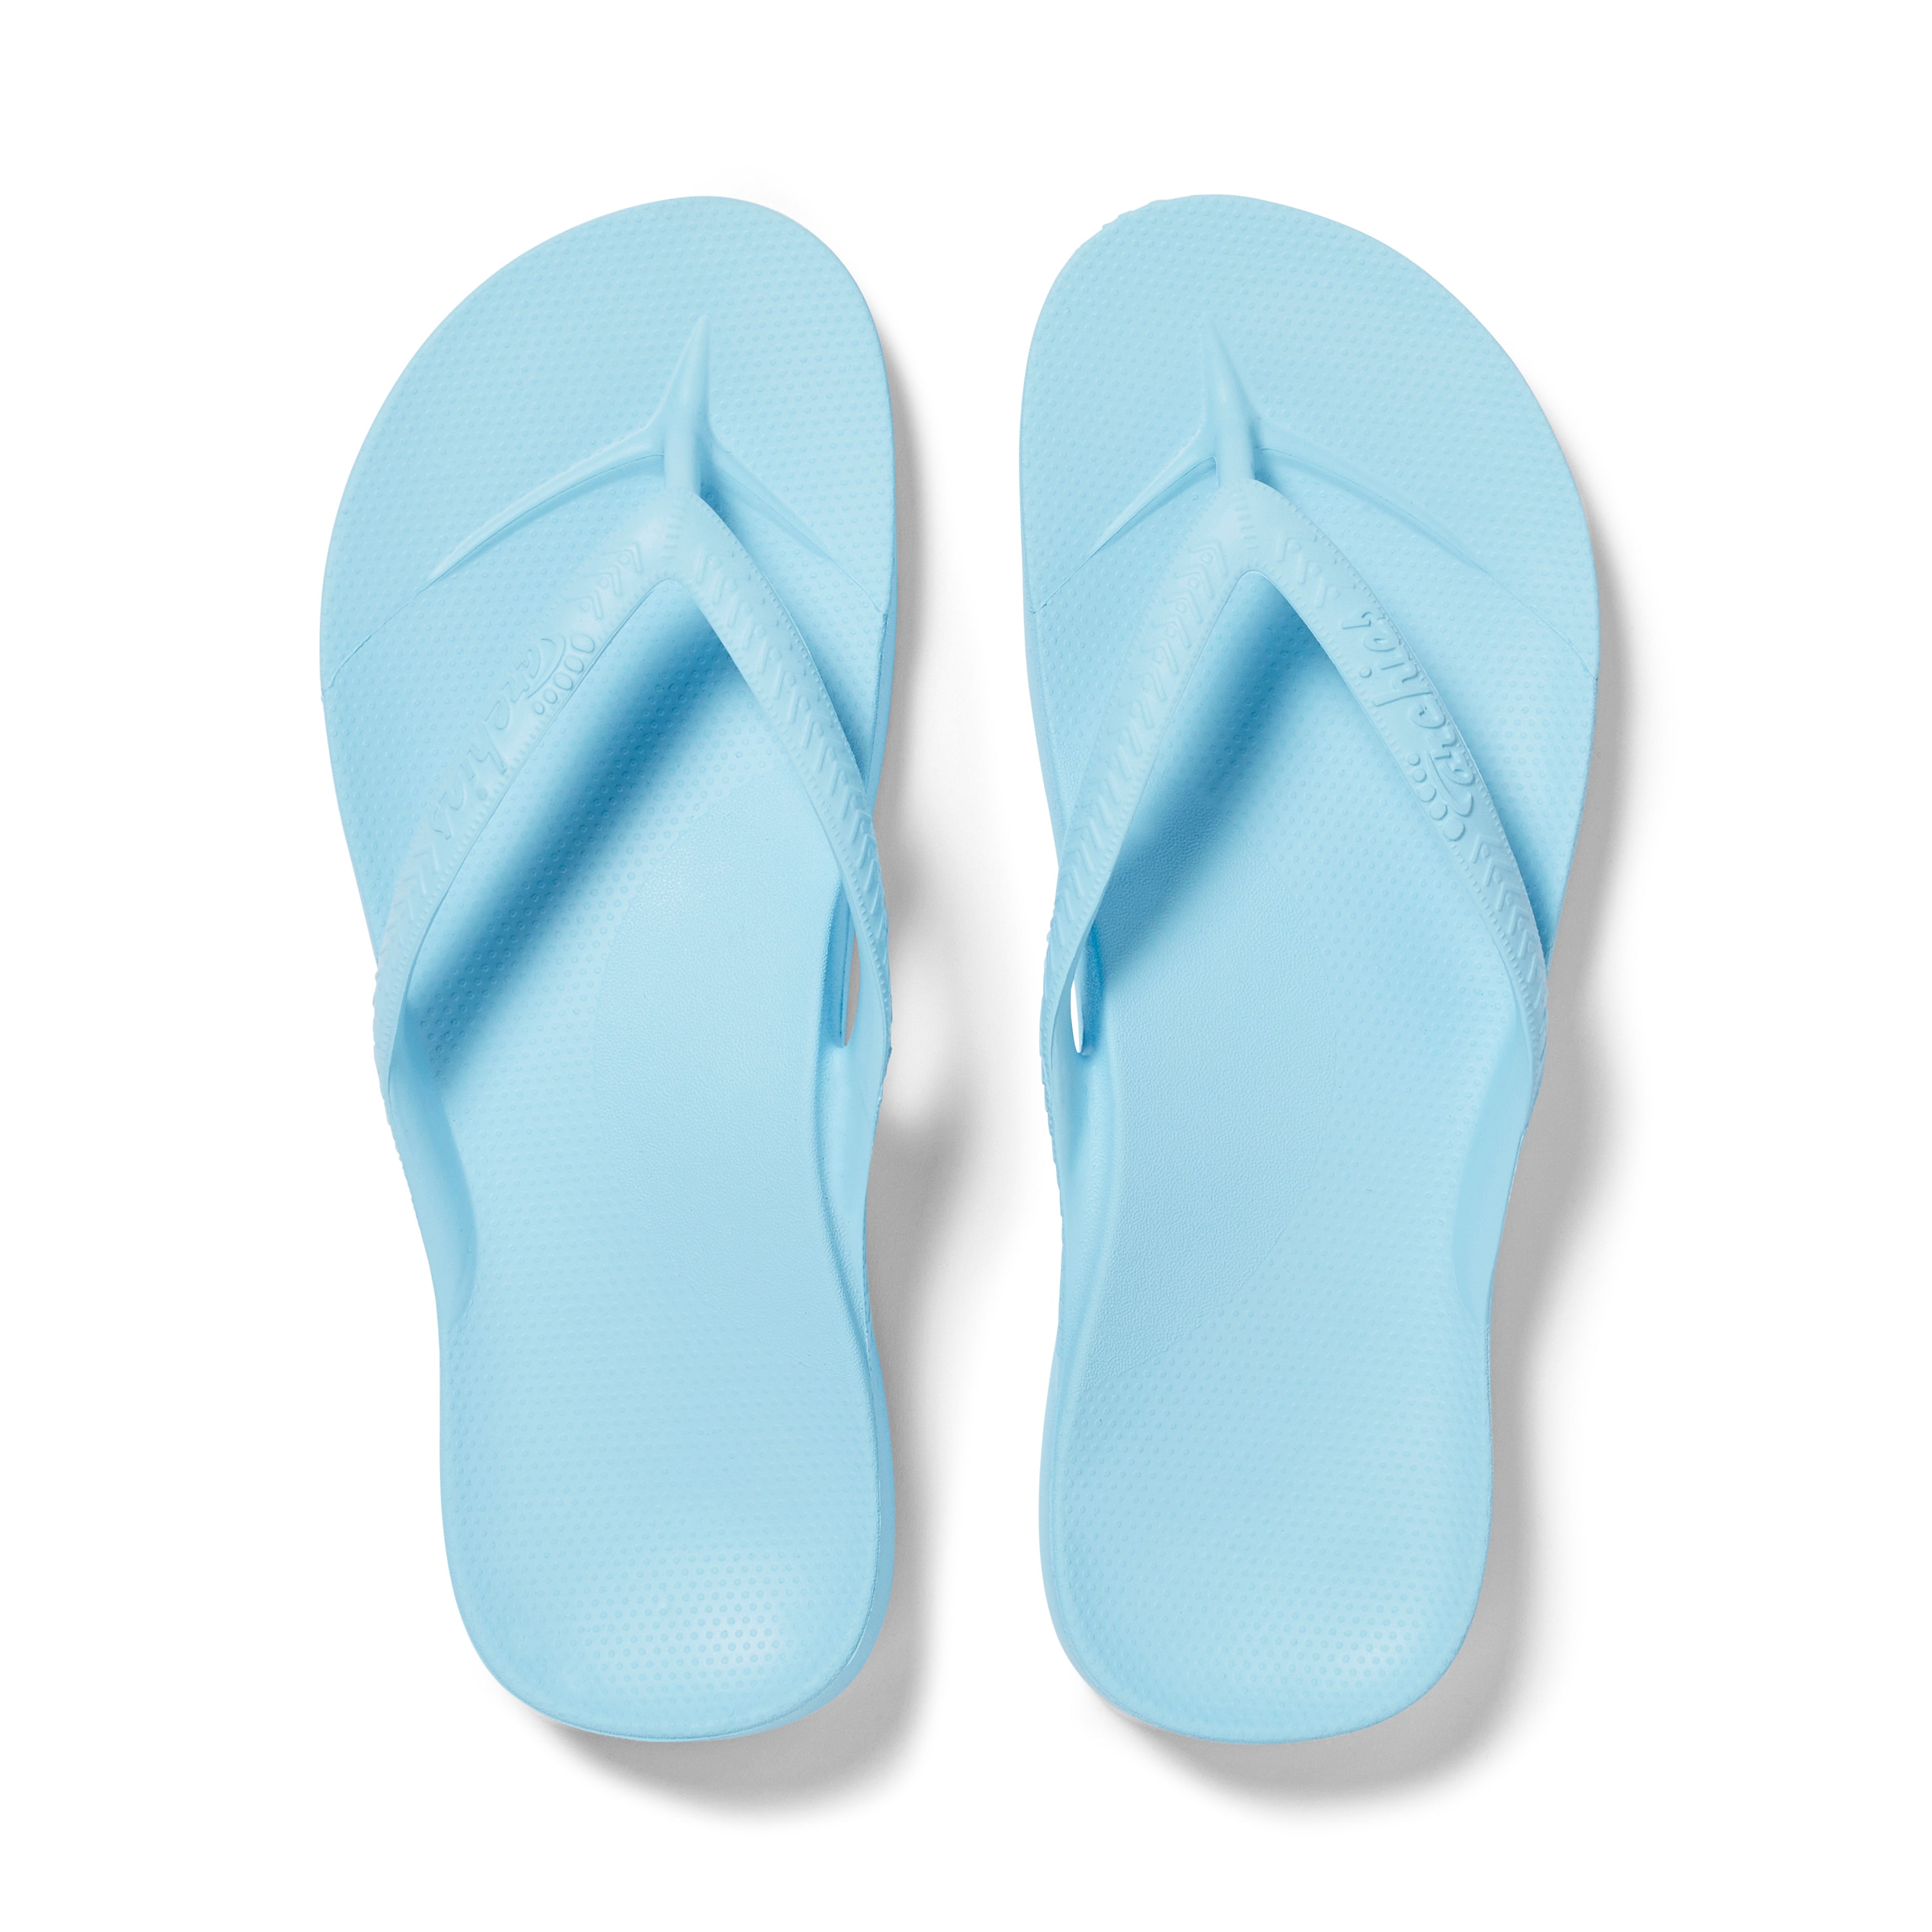 voelen innovatie Ligatie Sky Blue - Arch Support Flip Flops – Archies Footwear Pty Ltd. | Europe